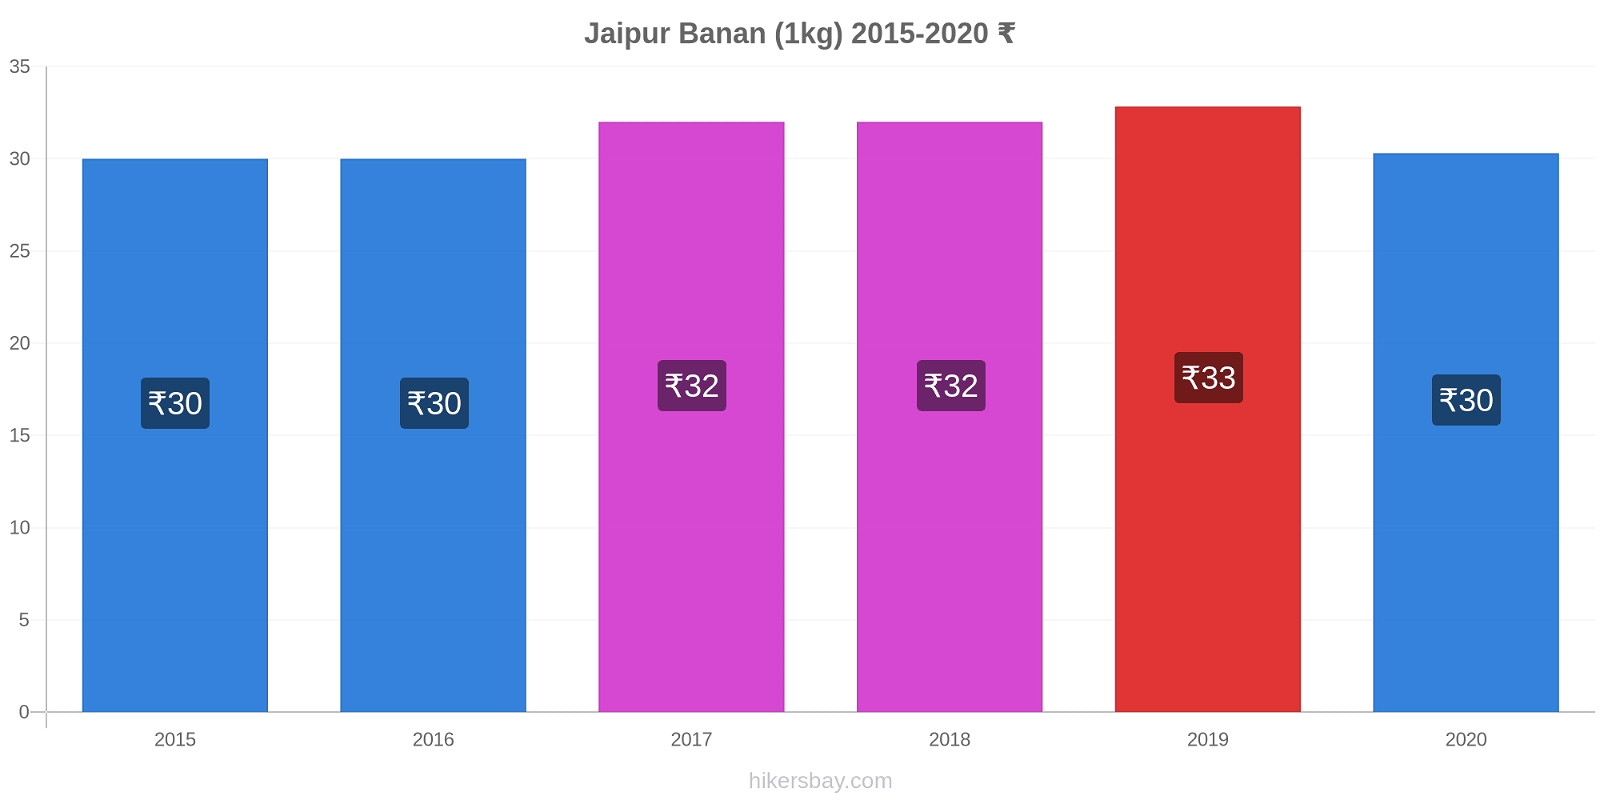 Jaipur prisændringer Banan (1kg) hikersbay.com